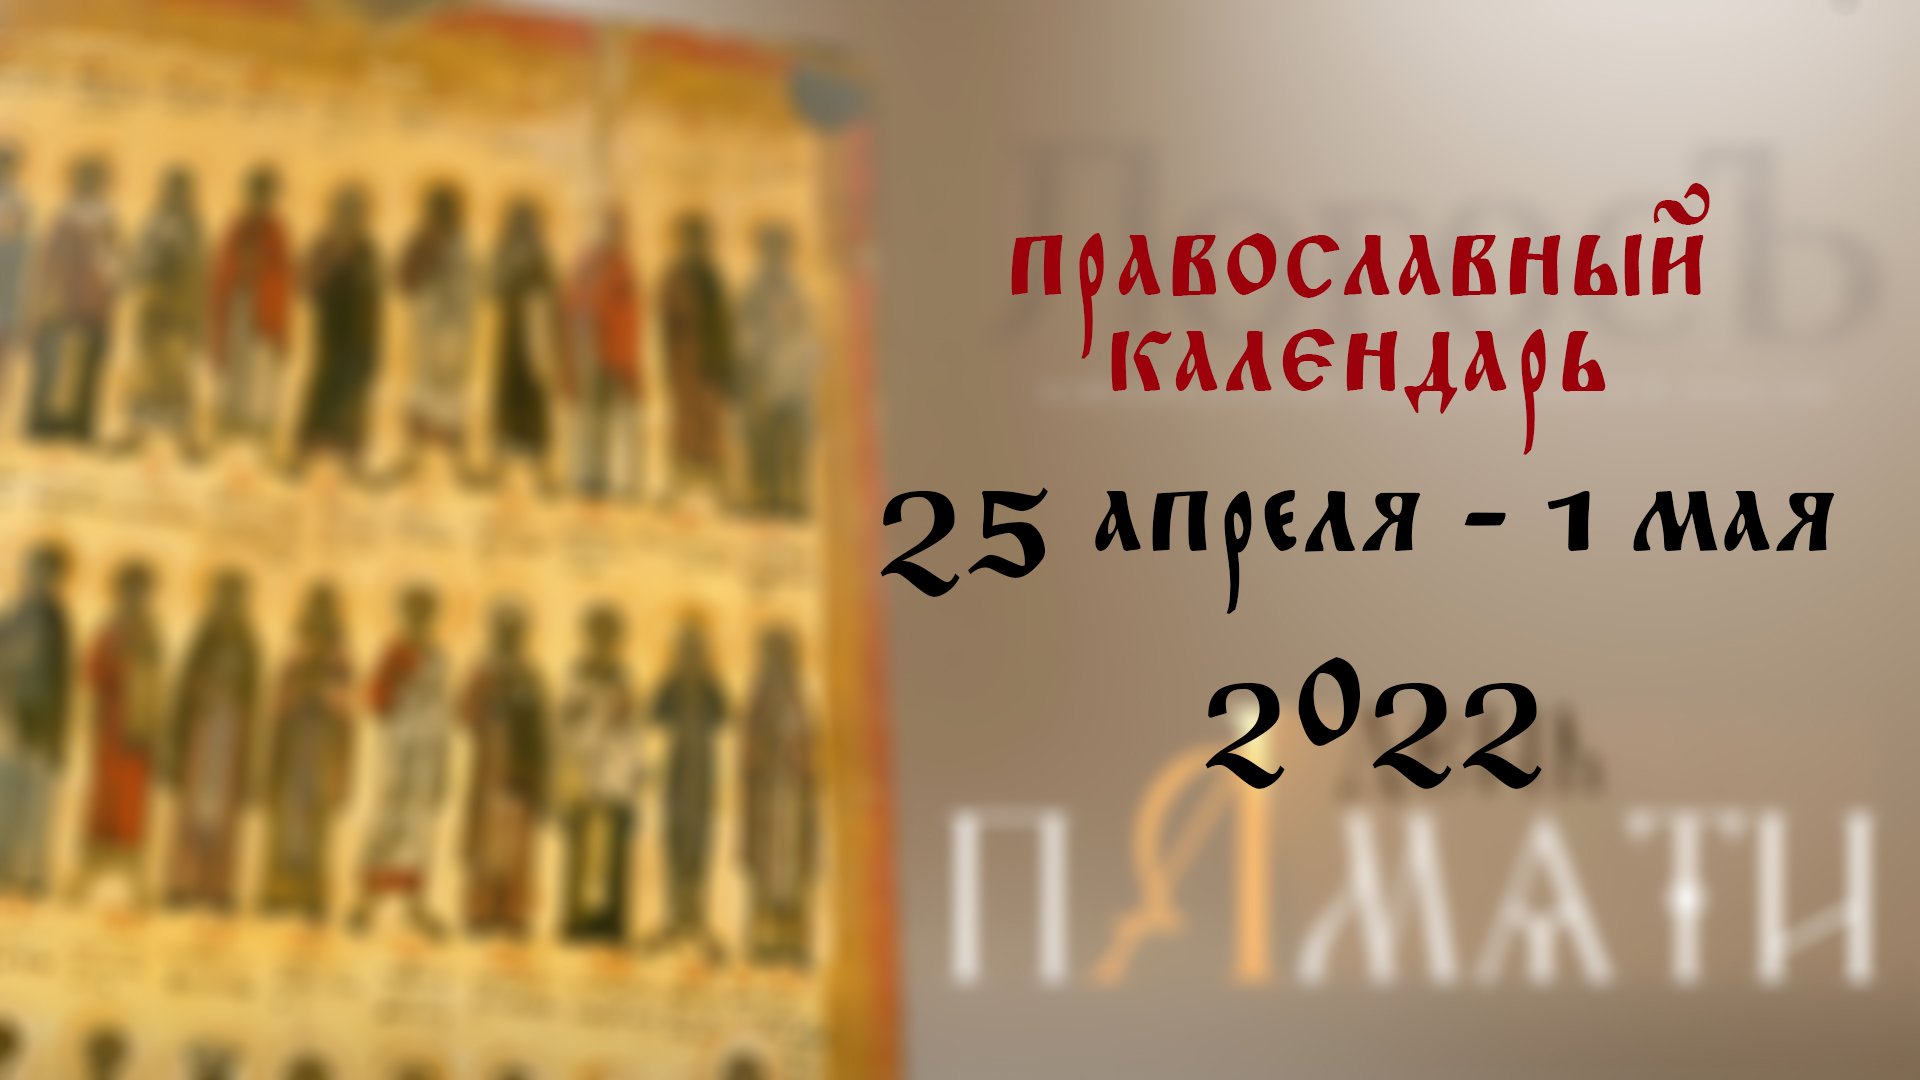 10 апреля православный праздник. С днем памяти святителей московских. С днем 25 июня православный. Большие православные праздники в 2023 году. Православный день 5 апреля.